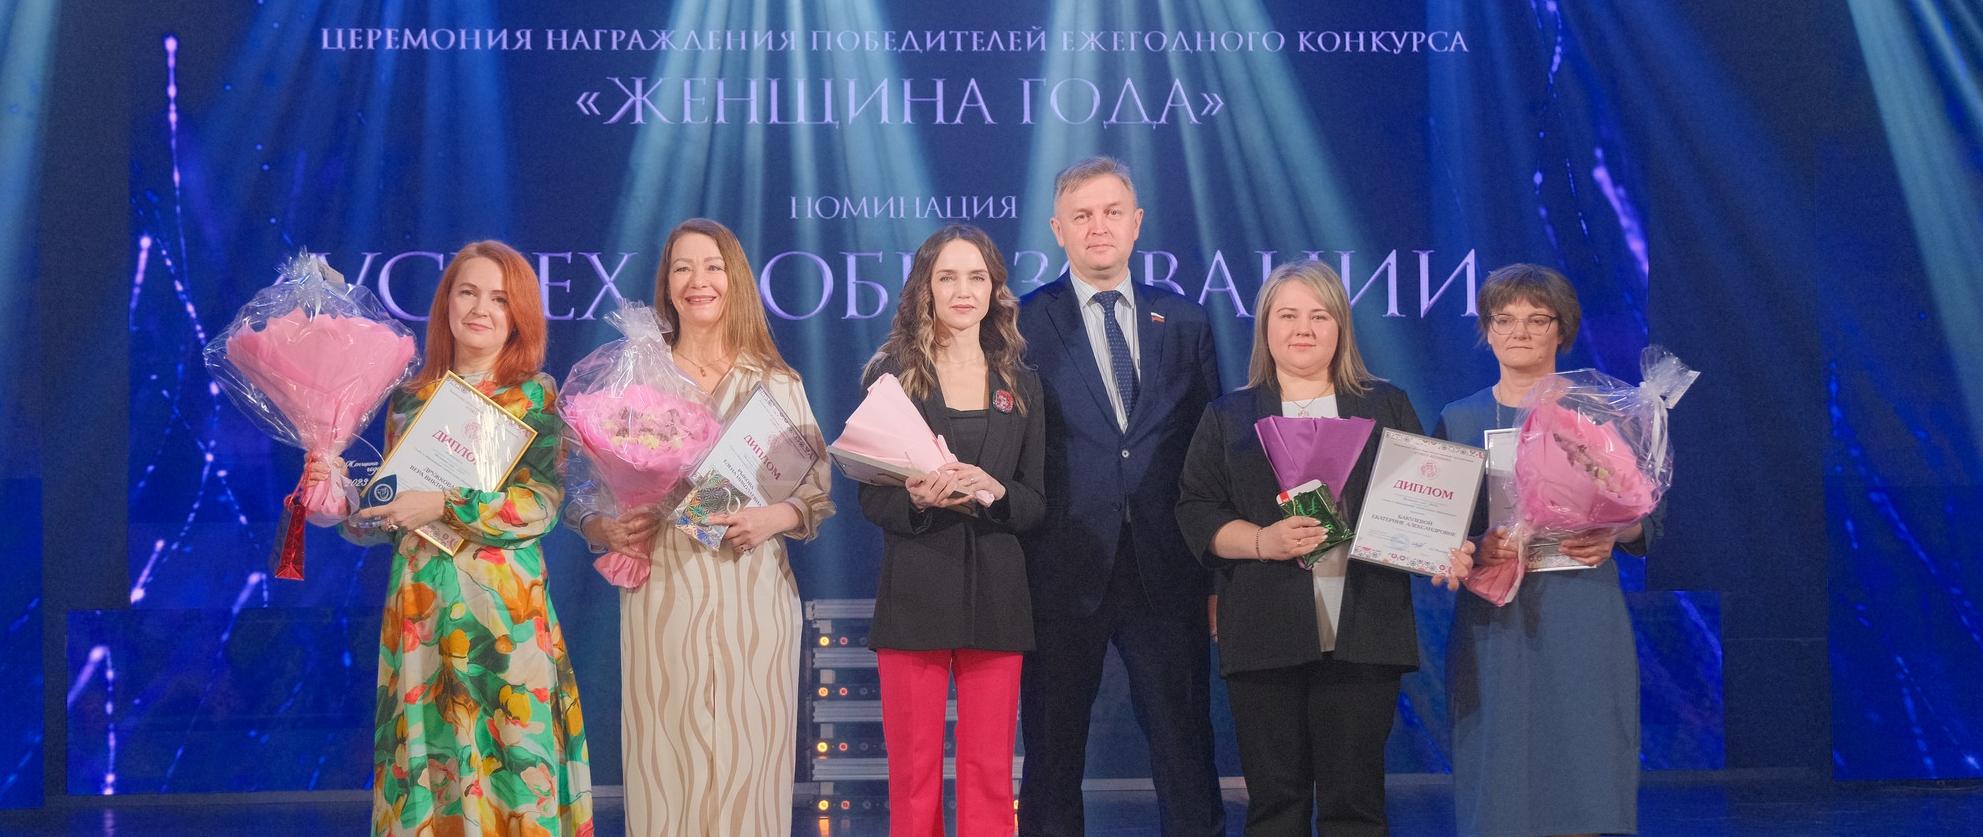 Две представительницы Кирово-Чепецкого района получили звание "Женщина года"